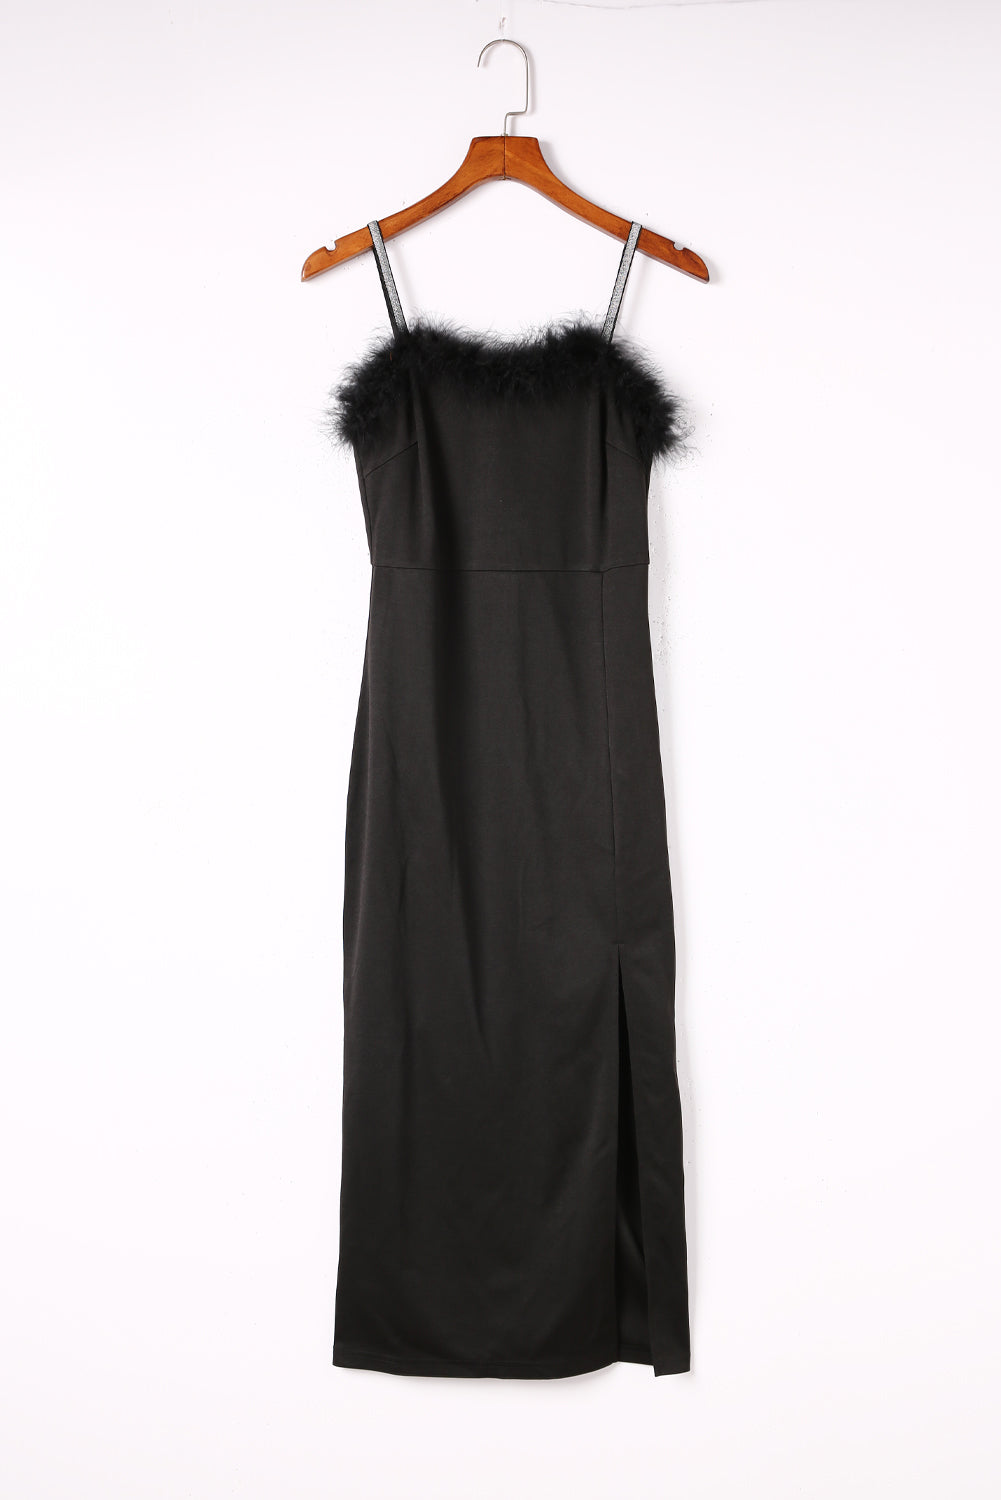 Black Rhinestone Straps Feather Trim Bodycon Midi Dress with Slit Blue Zone Planet